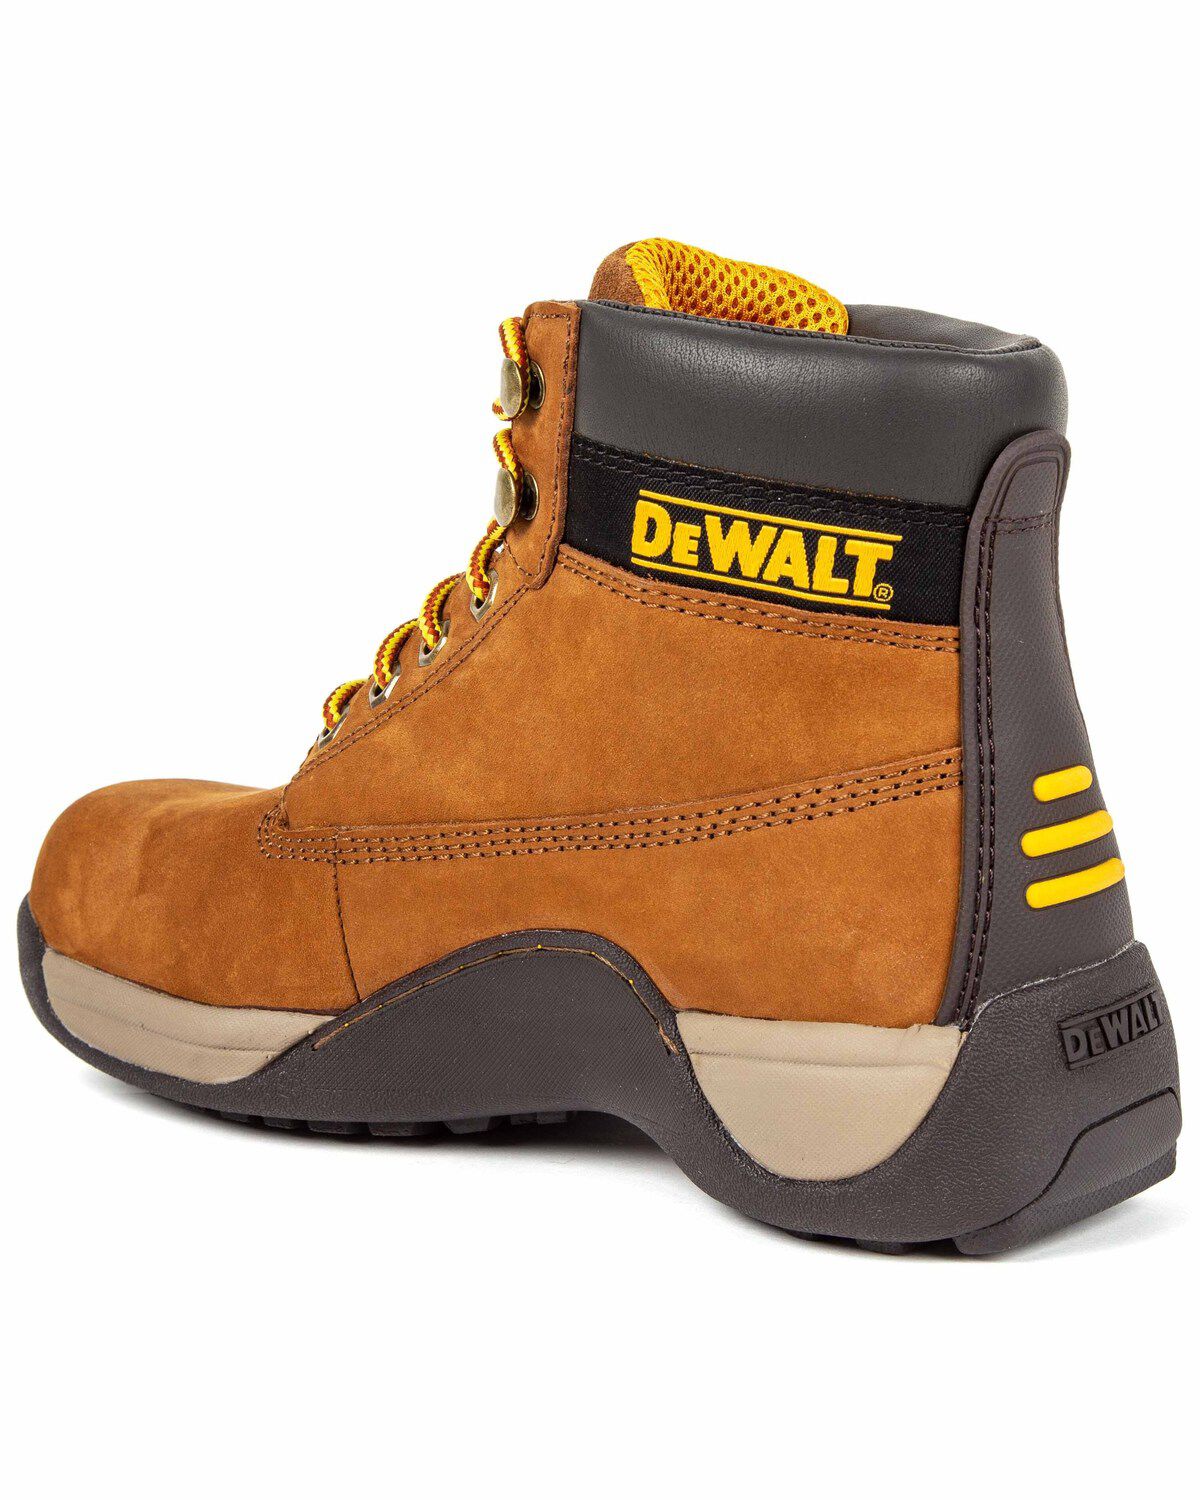 dewalt women's safety boots